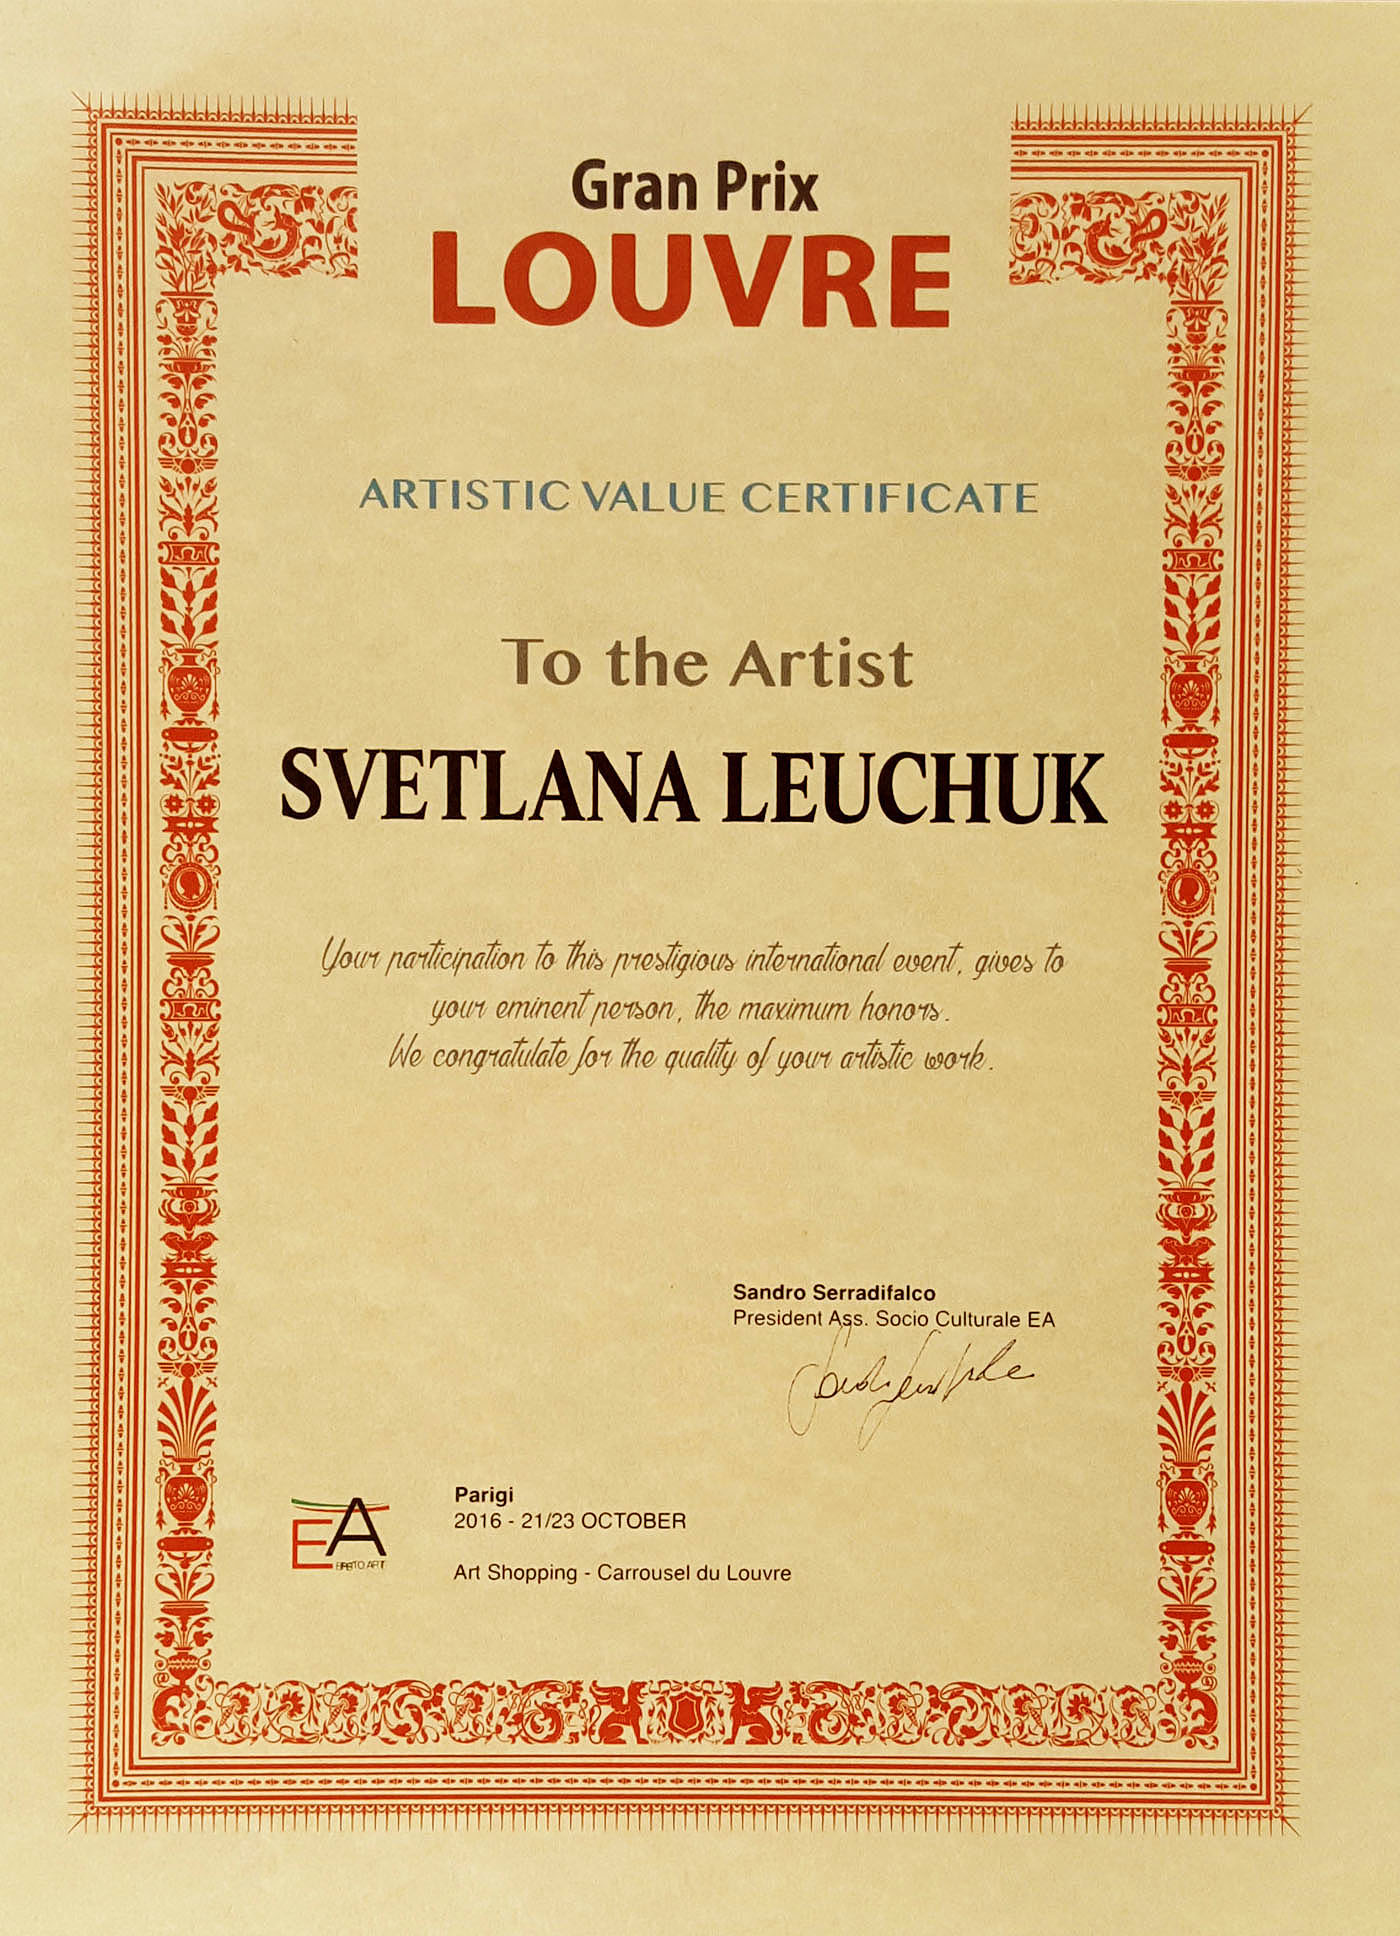 Gran-prix-louvre-artistic-certificate-Svetlana Leuchuk-2016